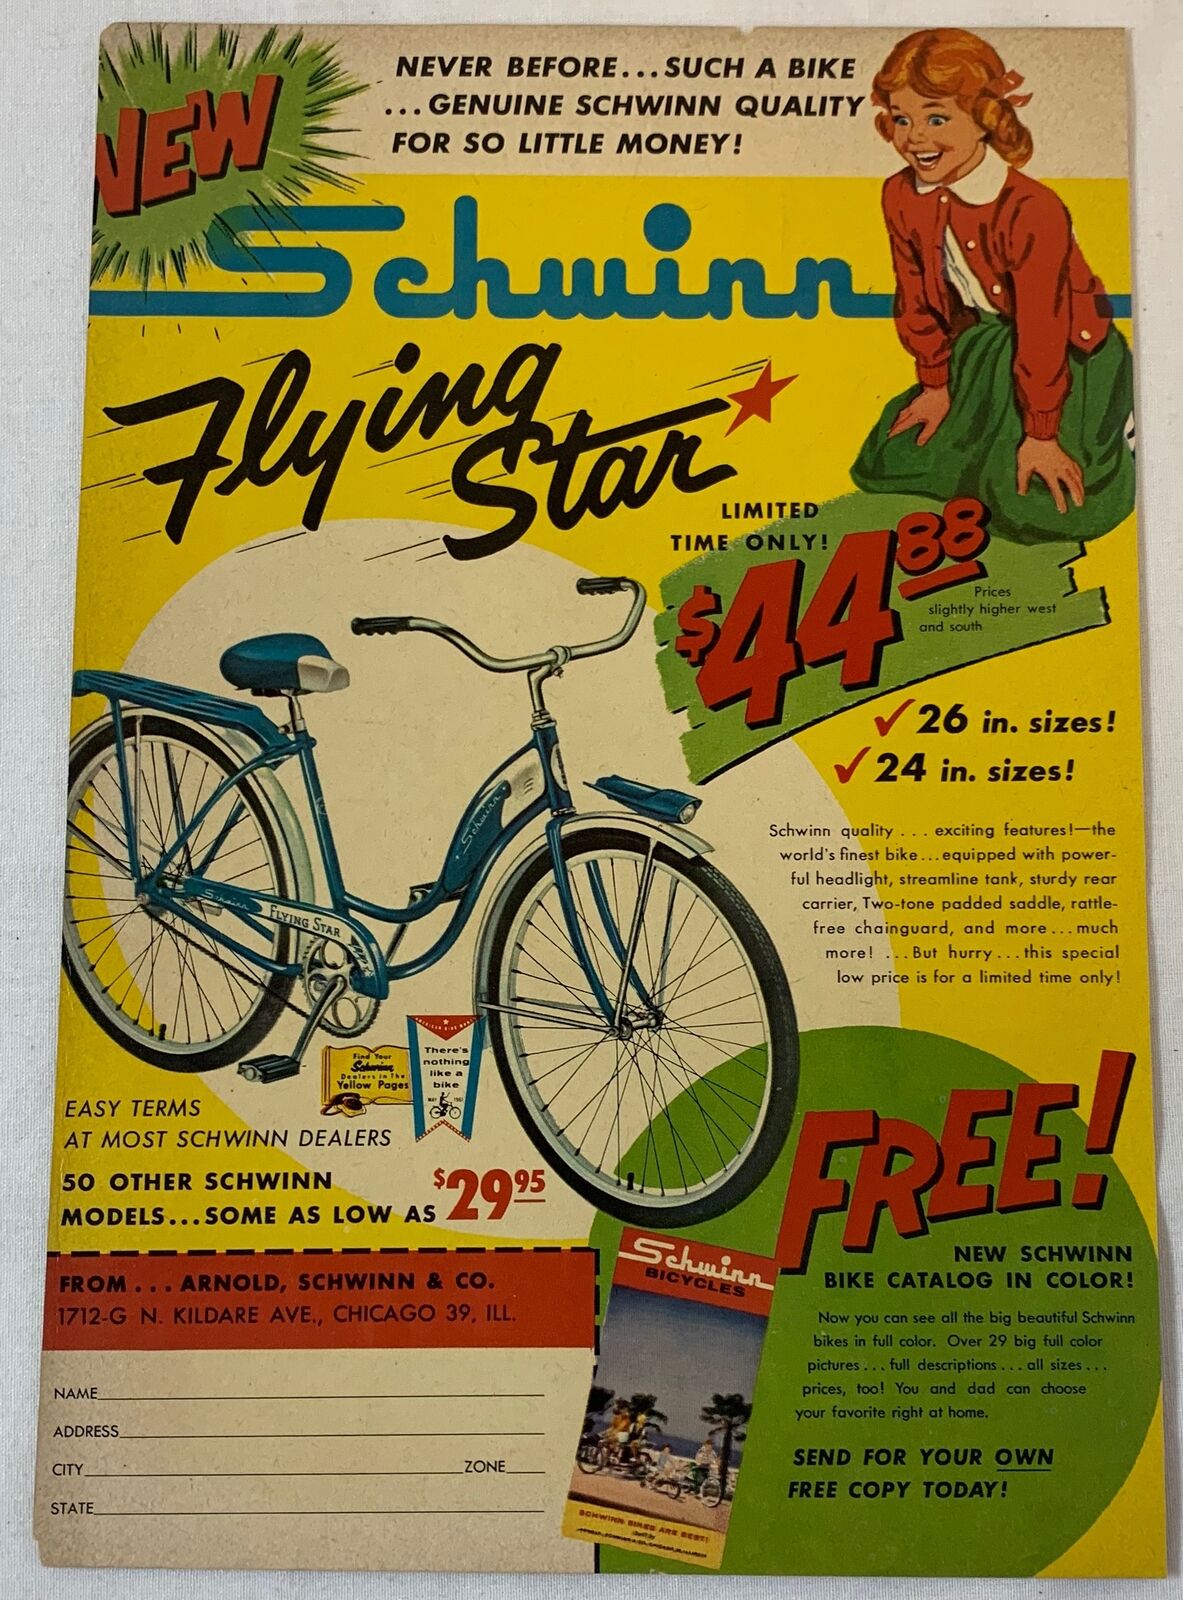 1961 SCHWINN FLYING STAR bicycle ad